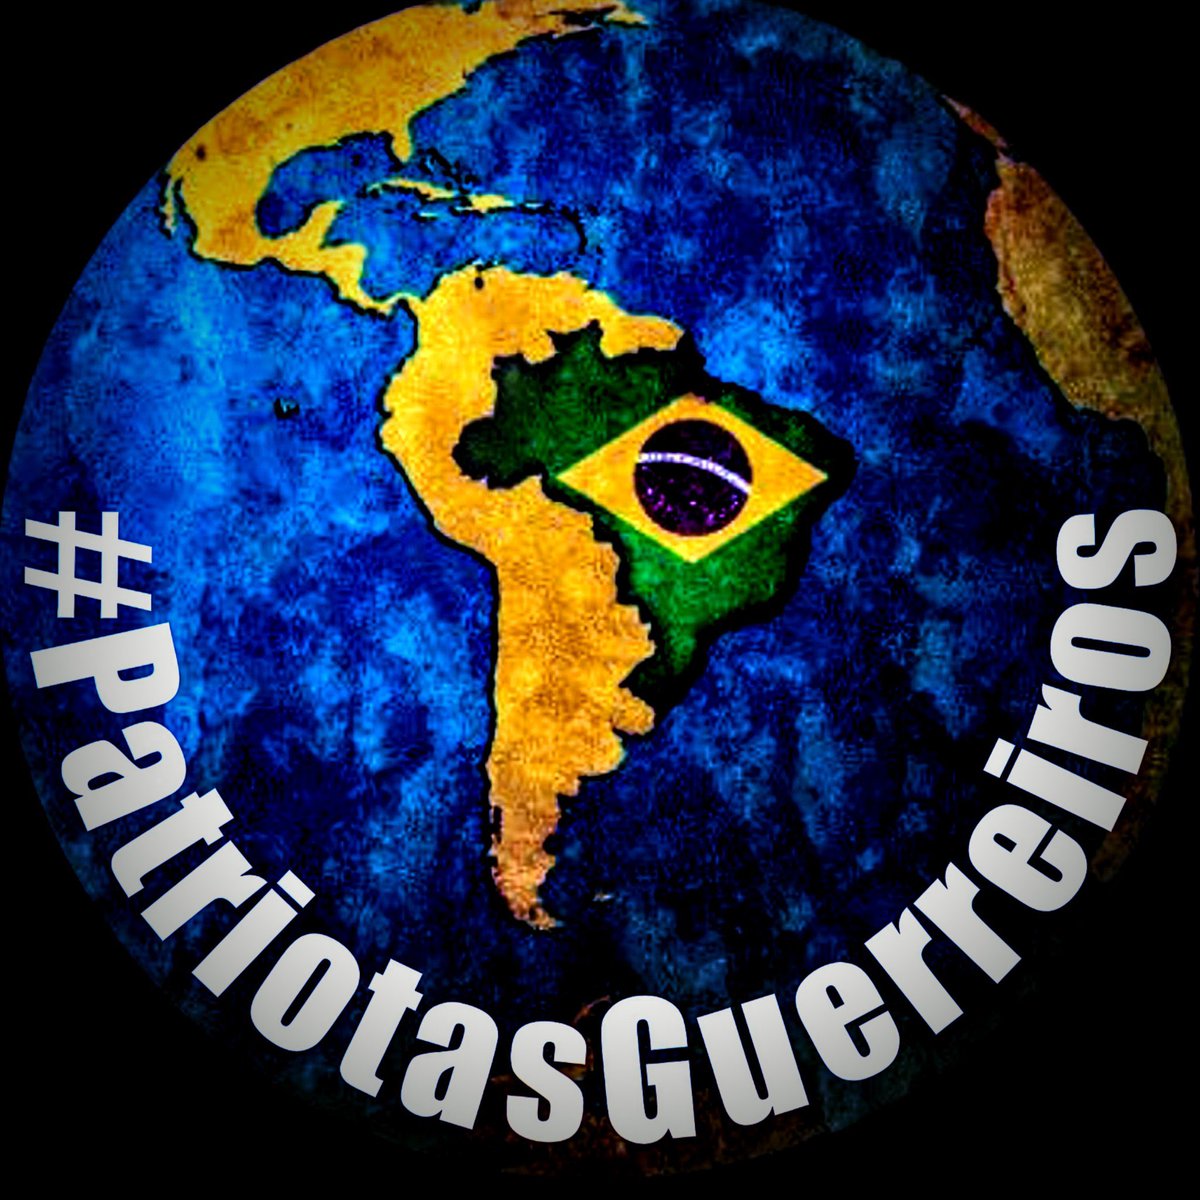 Boa tarde, em homenagem as vítimas do Rio Grande do Sul…                                   
#LIBERDADE
#BolsonaroNobeIDaPaz 
#BolsonaroSeraEterno
#BolsonaroOrgulhoDoBrasil
#DeusNoComandoSempre
#ForaLula